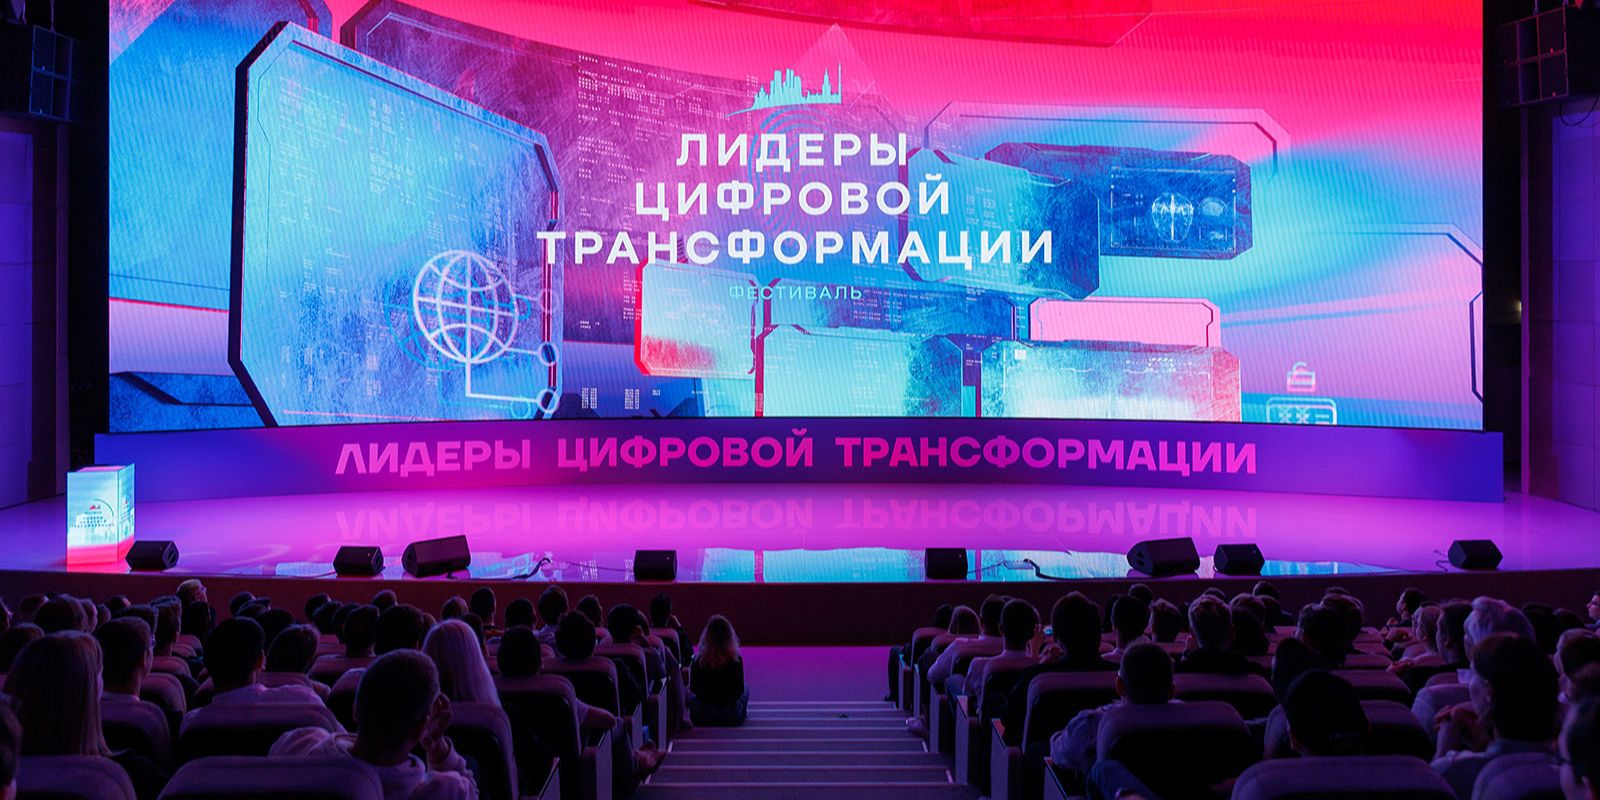 Более 2,7 тысячи человек зарегистрировались на конкурс «Лидеры цифровой трансформации»